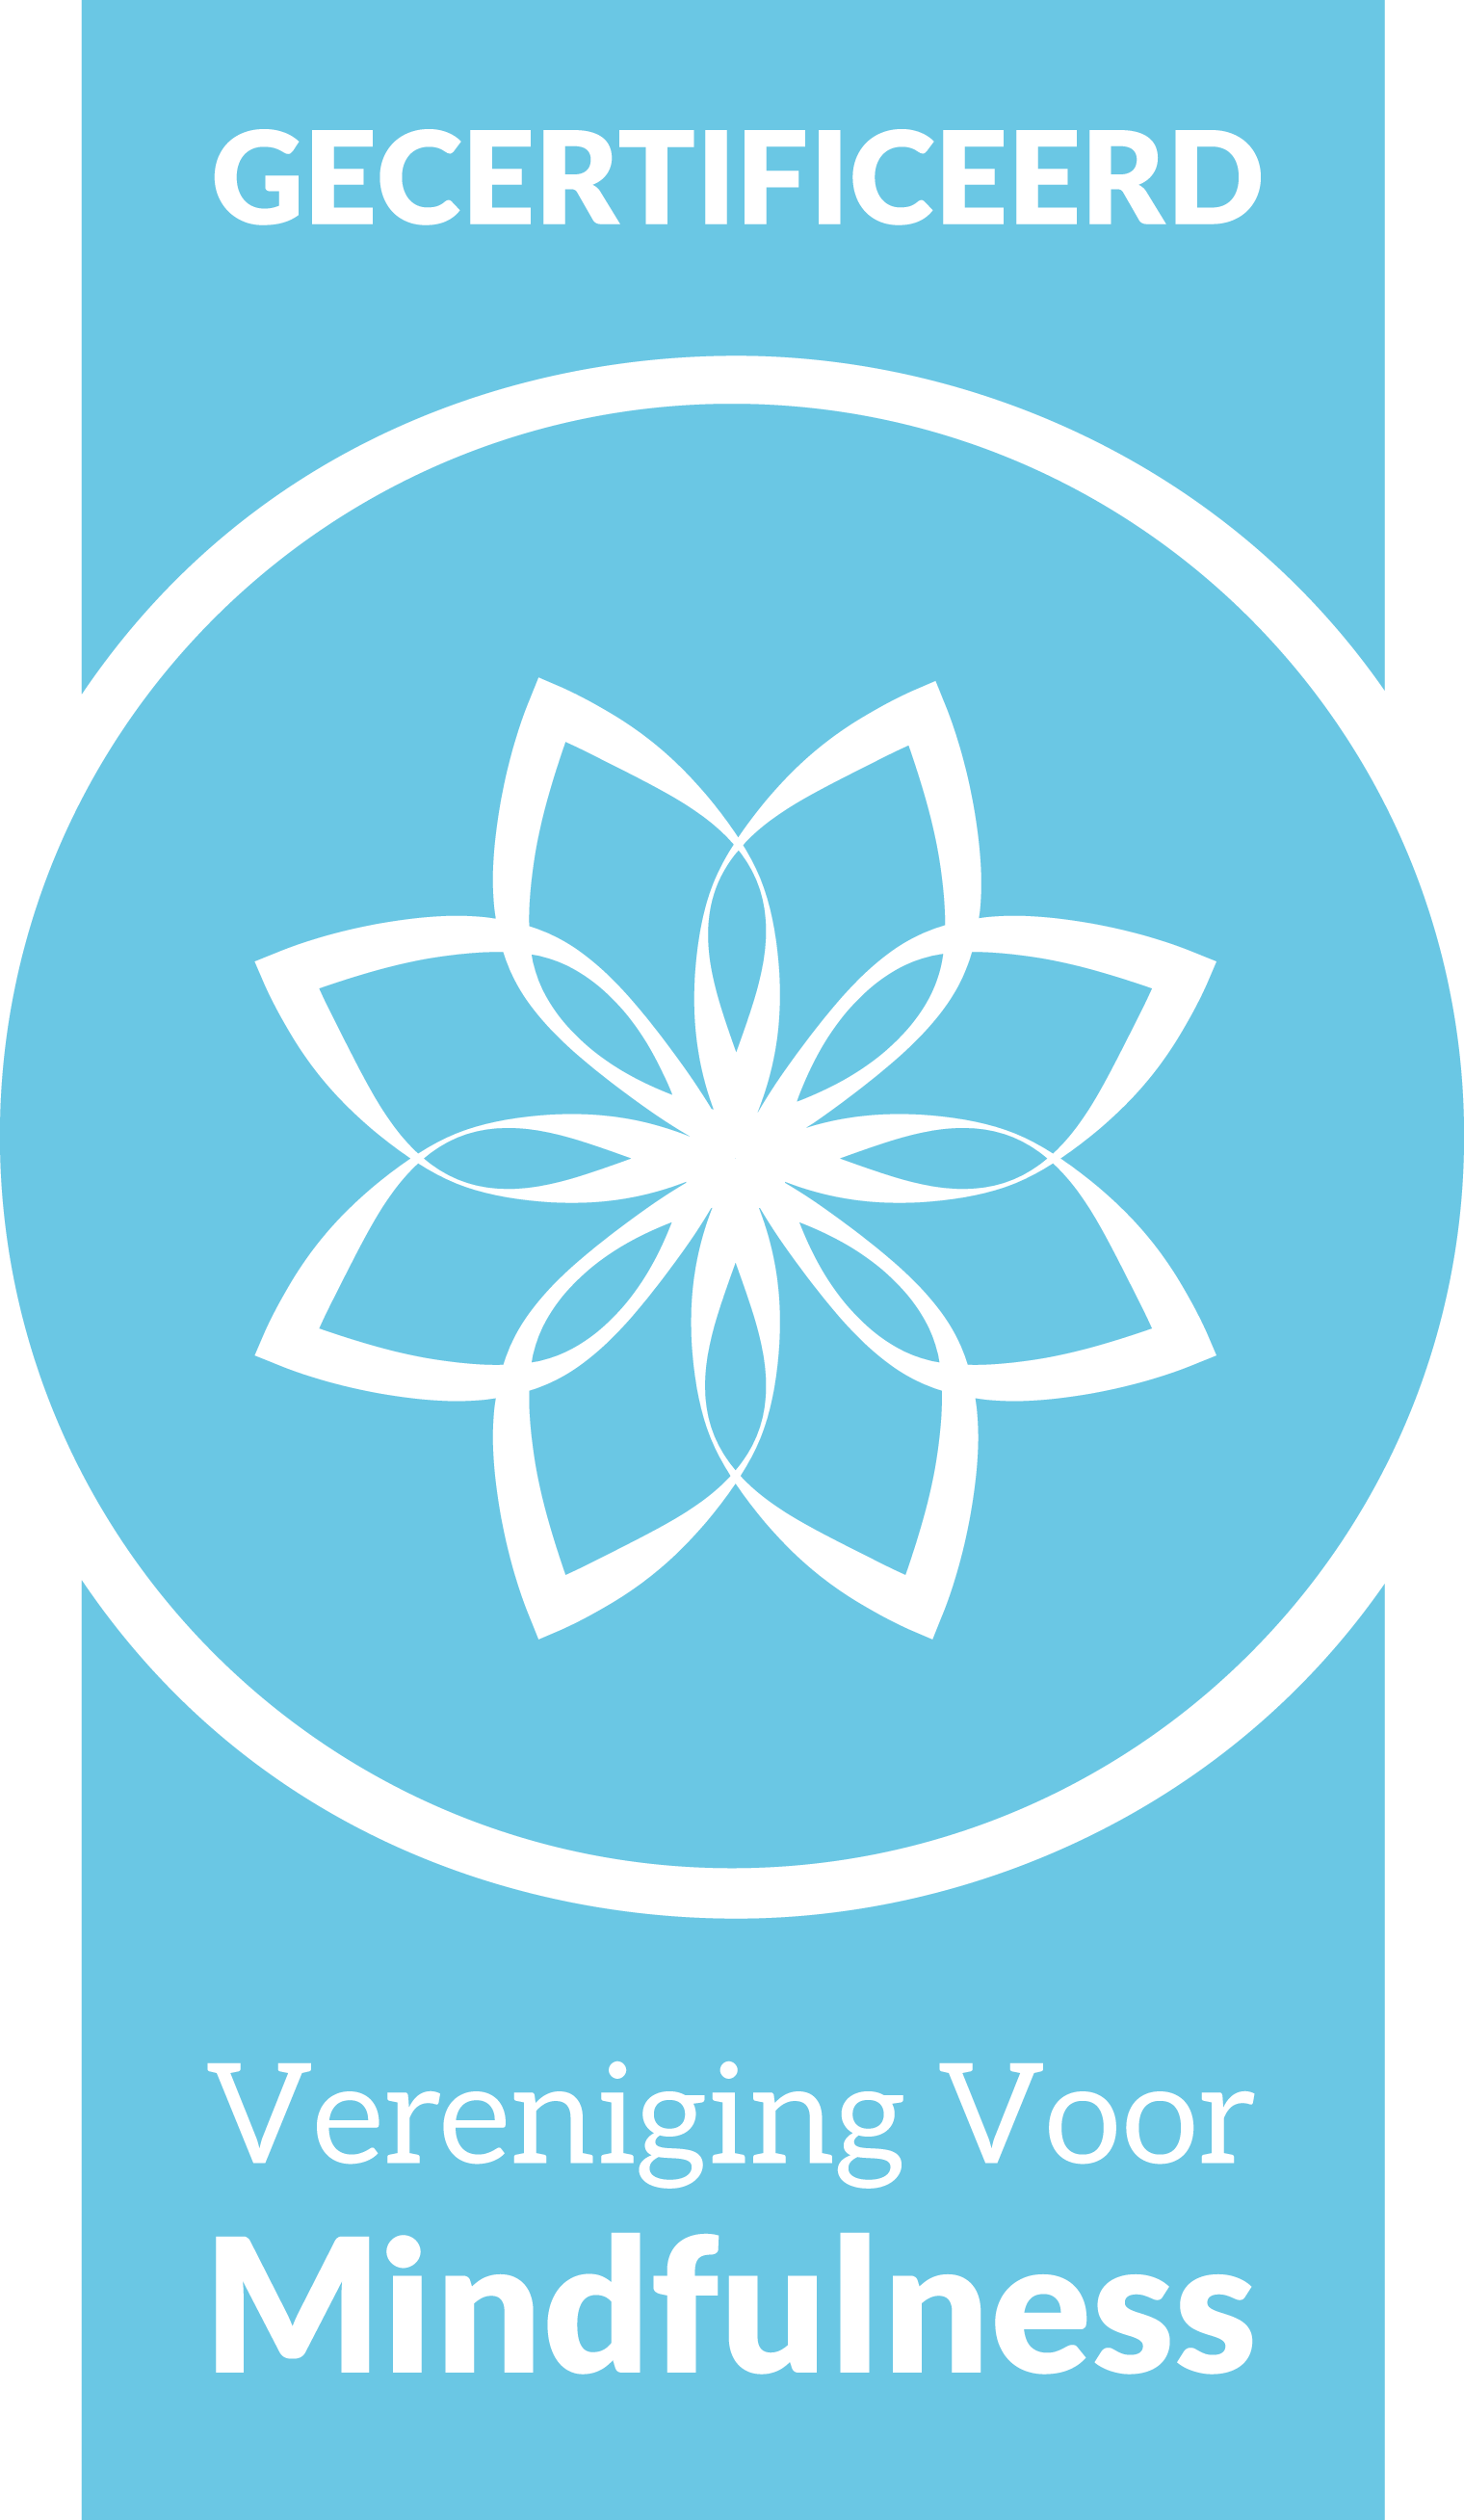 Logo gecertificeerd vereniging voor mindfulness